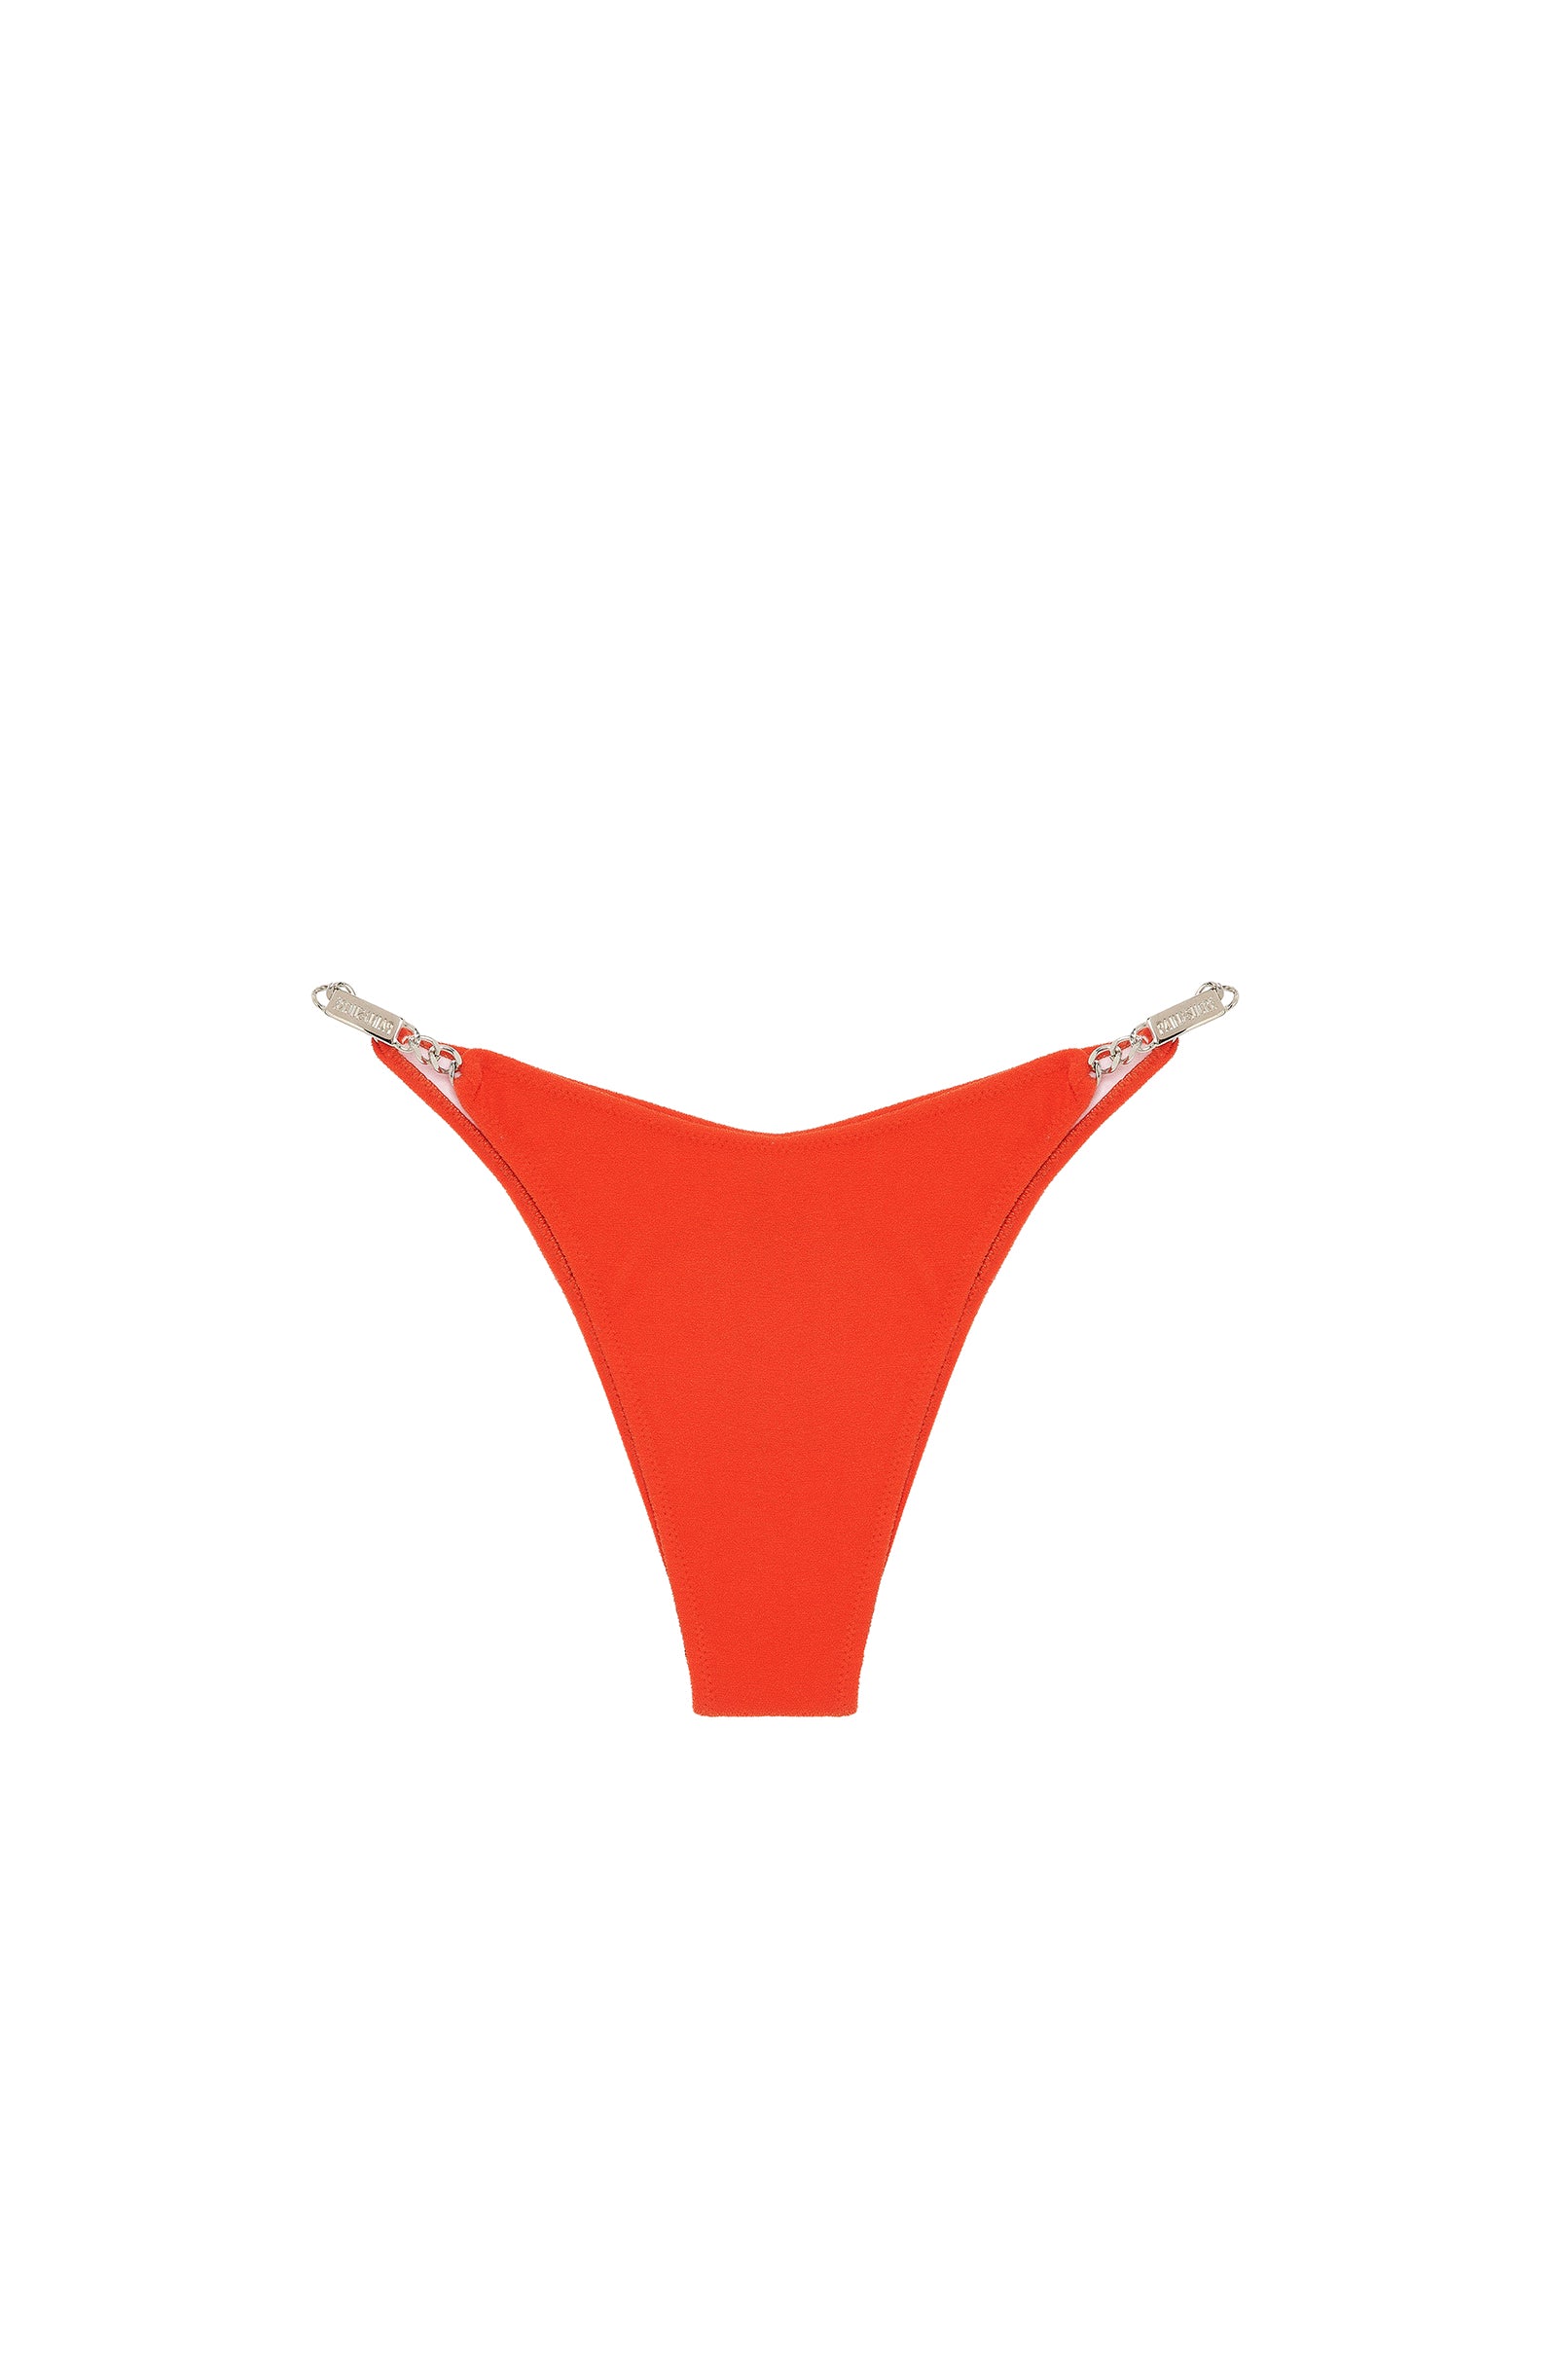 tanja Orange terry tanga bikini bottoms